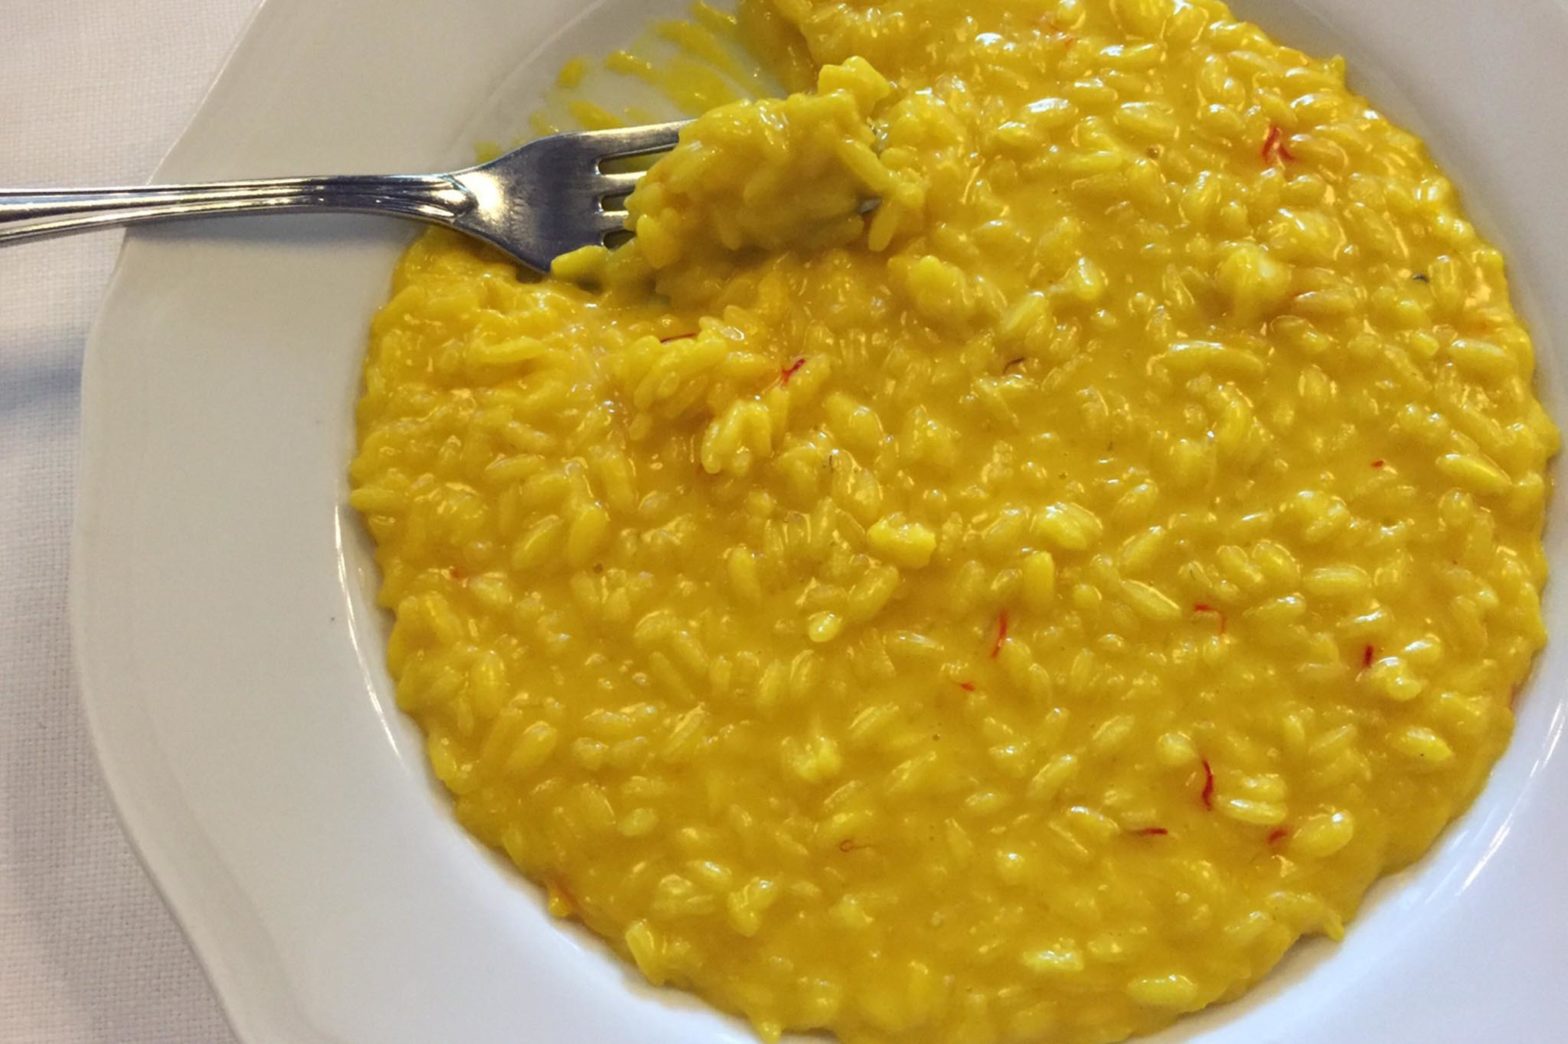 Il risotto giallo alla milanese coi pistilli di Trattoria masuelli